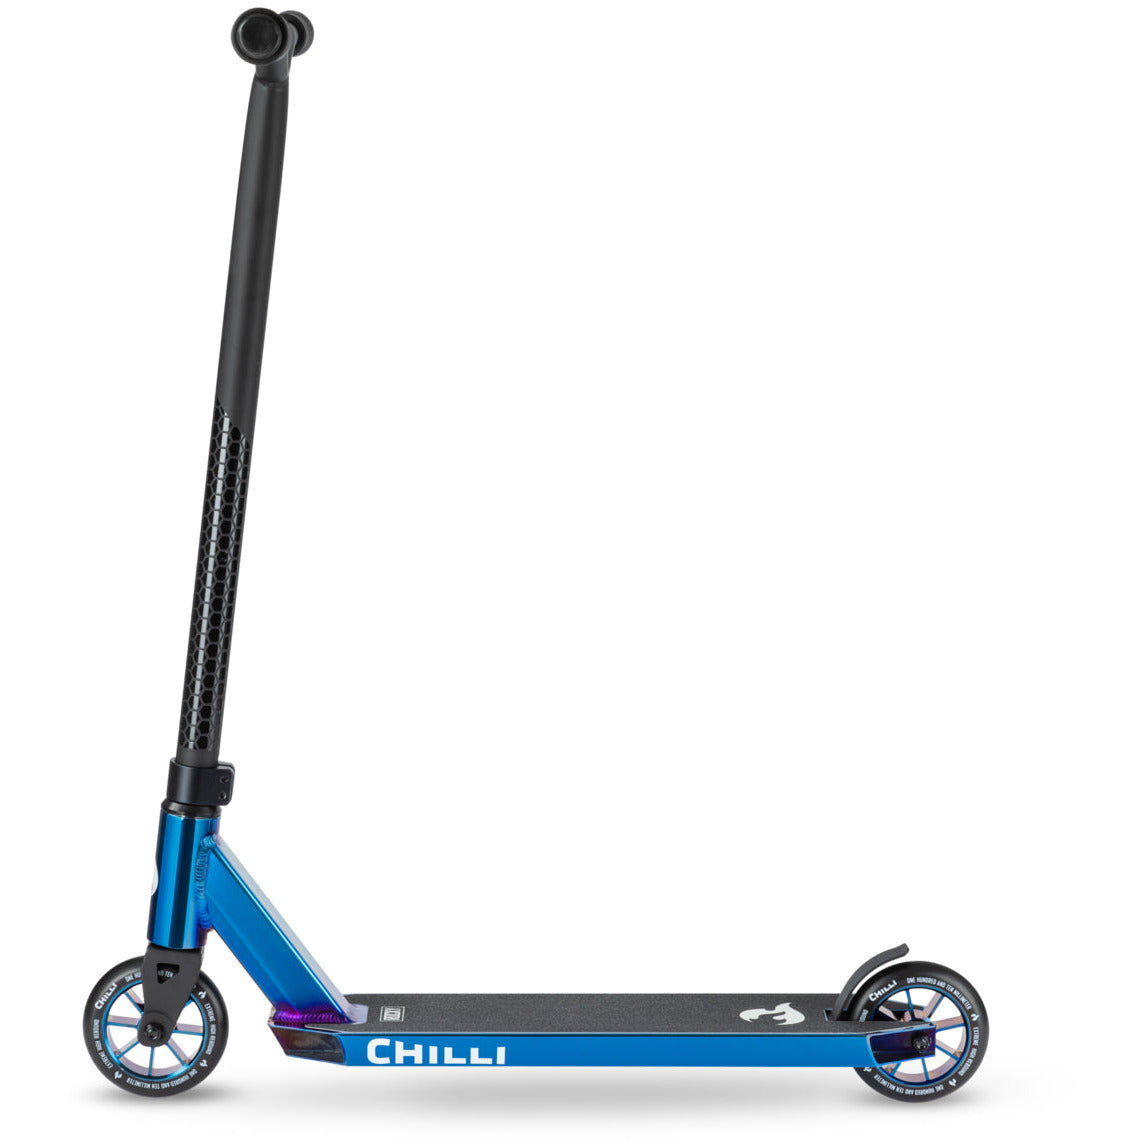 Chilli Pro Scooter Rocky - Blue Neochrome